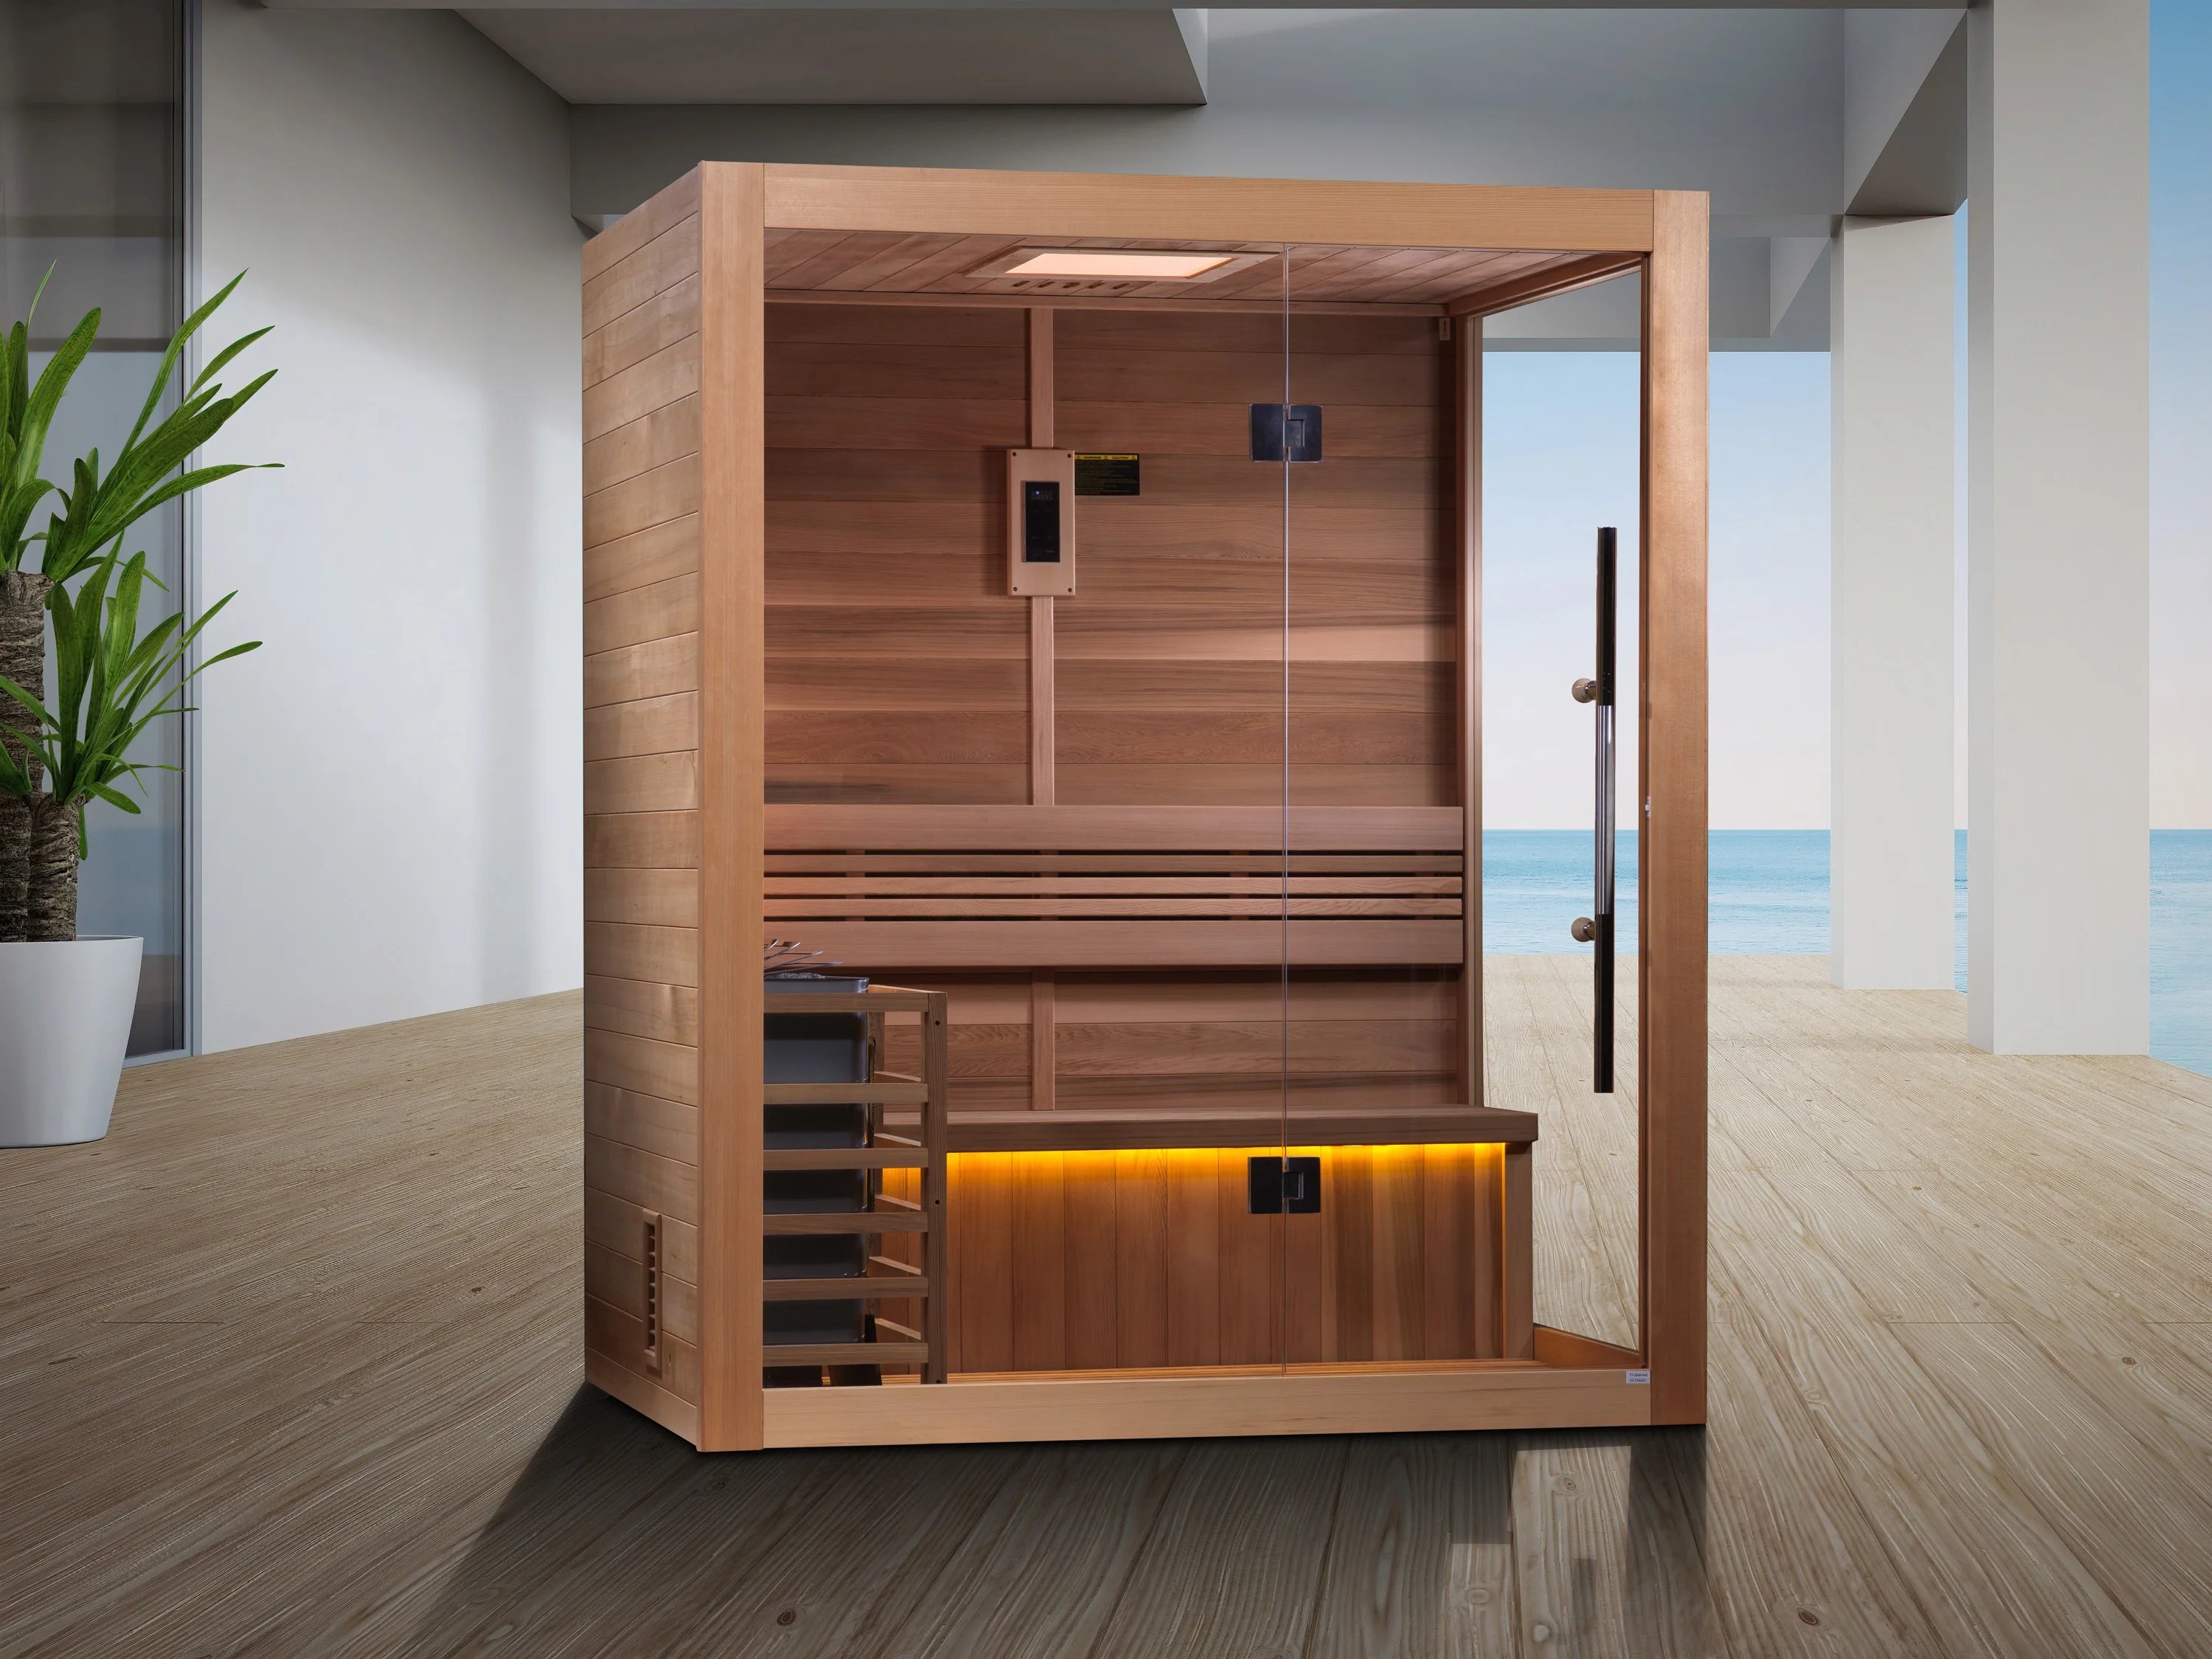 Golden Designs Hanko Edition 2 Person Indoor Traditional Sauna Indoor Sauna Golden Designs Saunas   